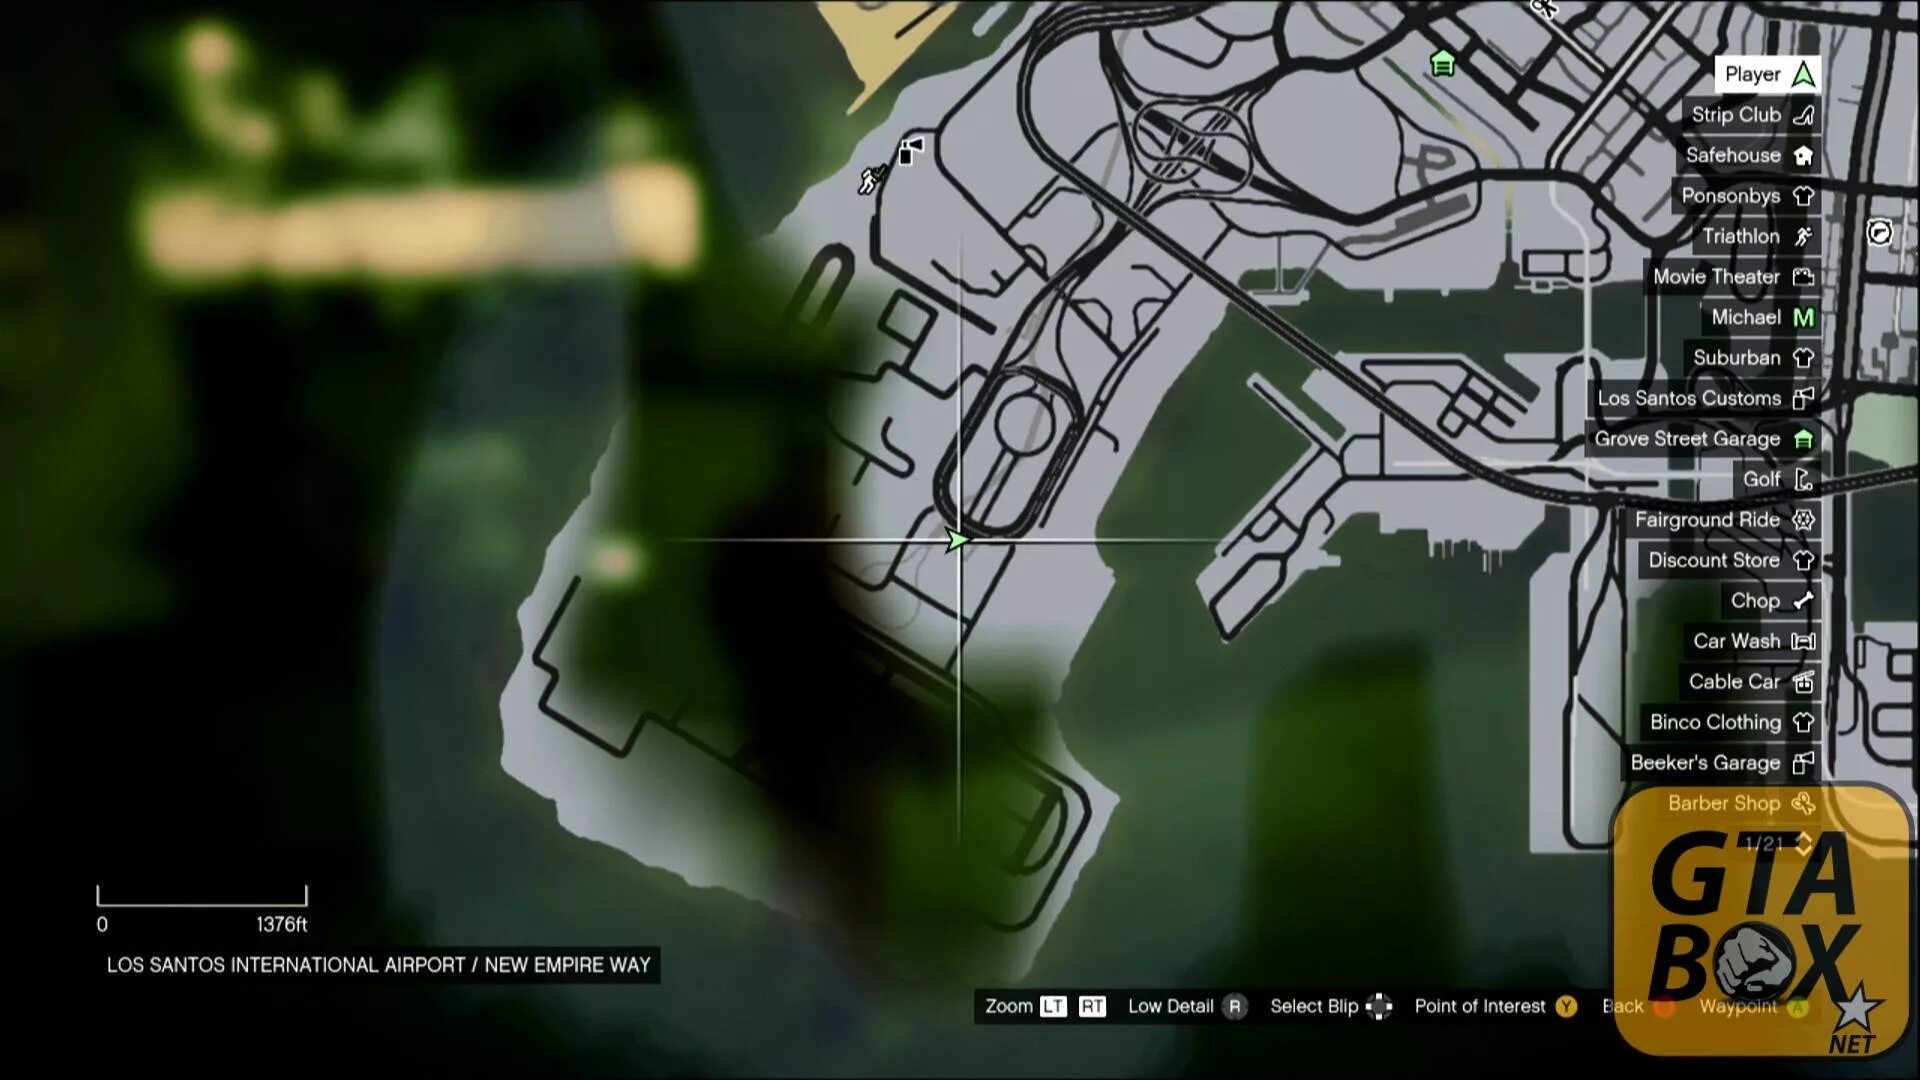 Карта обрывков гта 5. Карта GTA 5 Xbox 360. Карта обрывков письма в GTA 5. Карта всех писем в ГТА 5. Карта обрывков в ГТА 5.